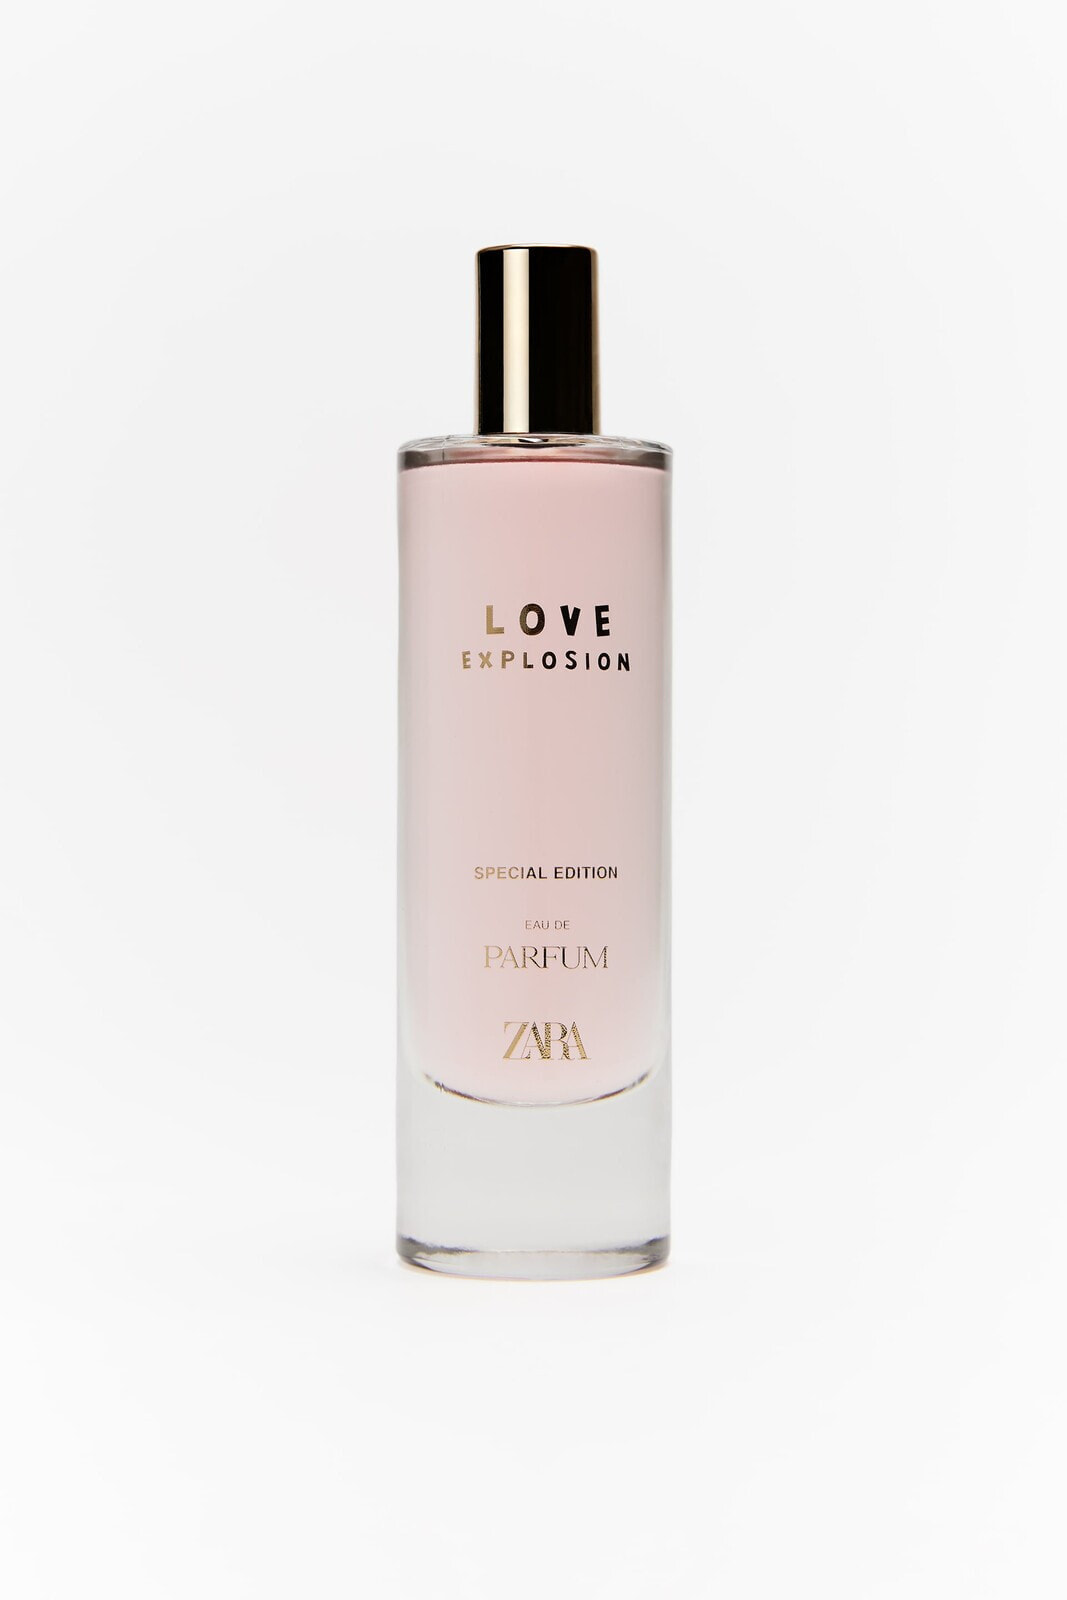 Love explosion special edition eau de parfum 80 ml / 2.71 oz